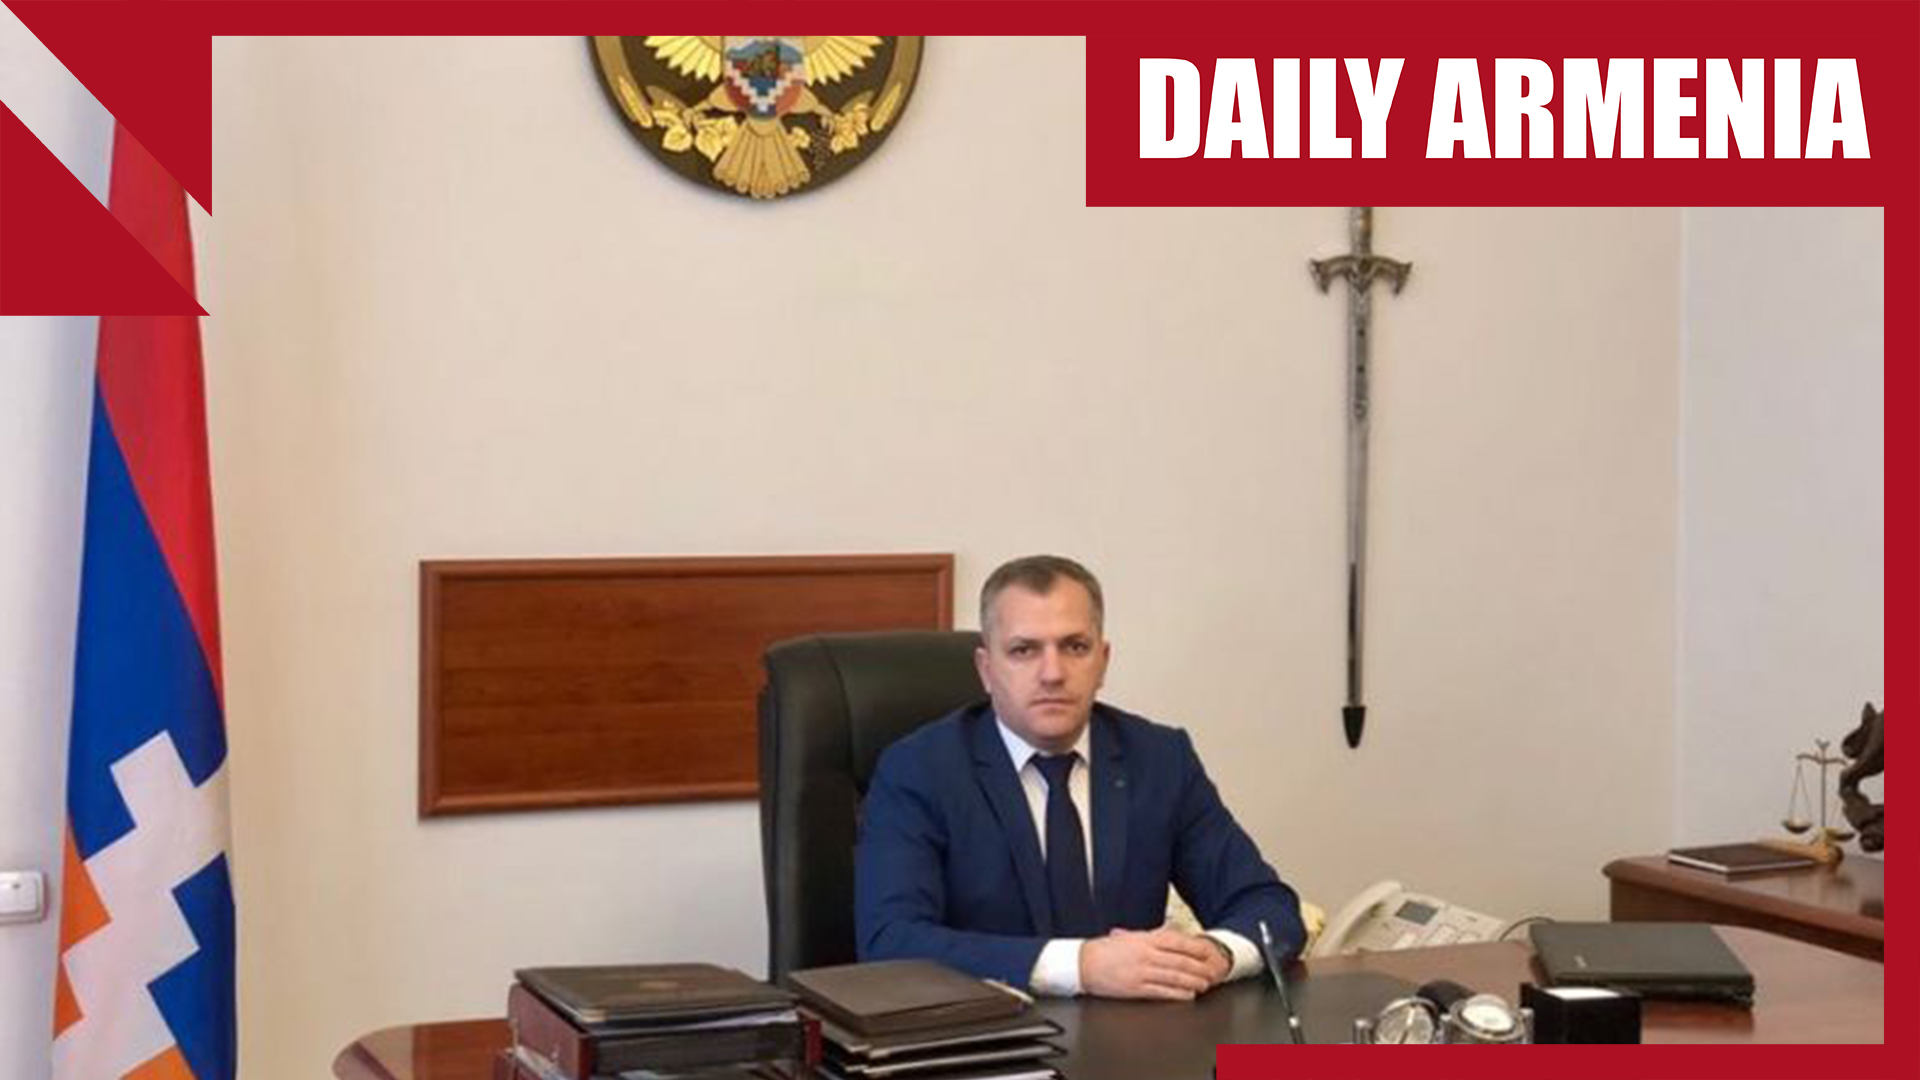 Karabakh set to choose new president